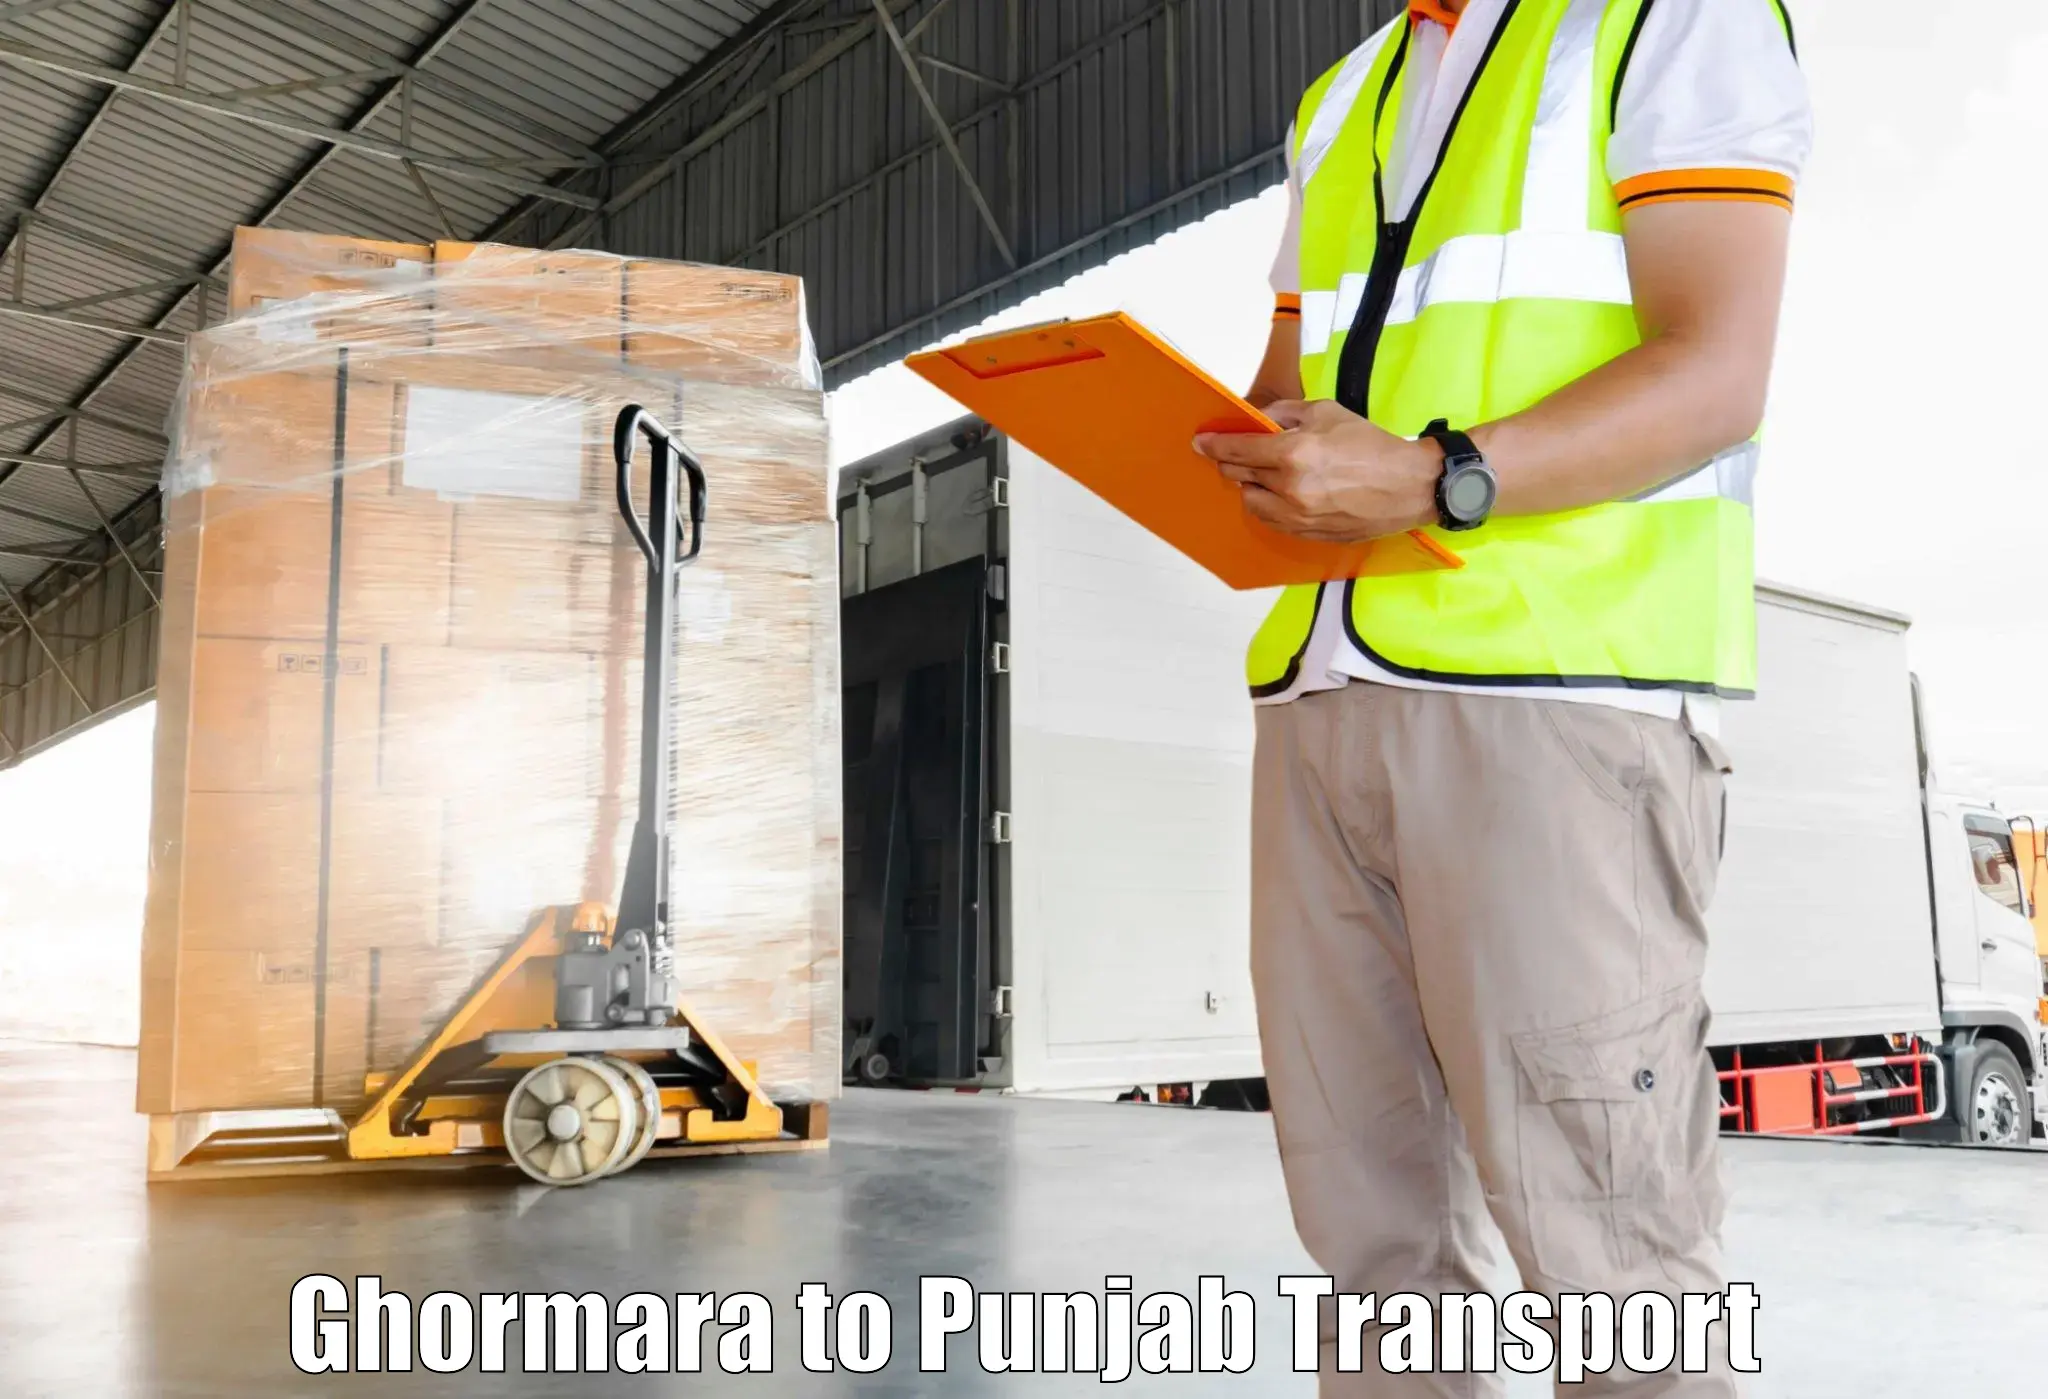 Furniture transport service Ghormara to Pathankot